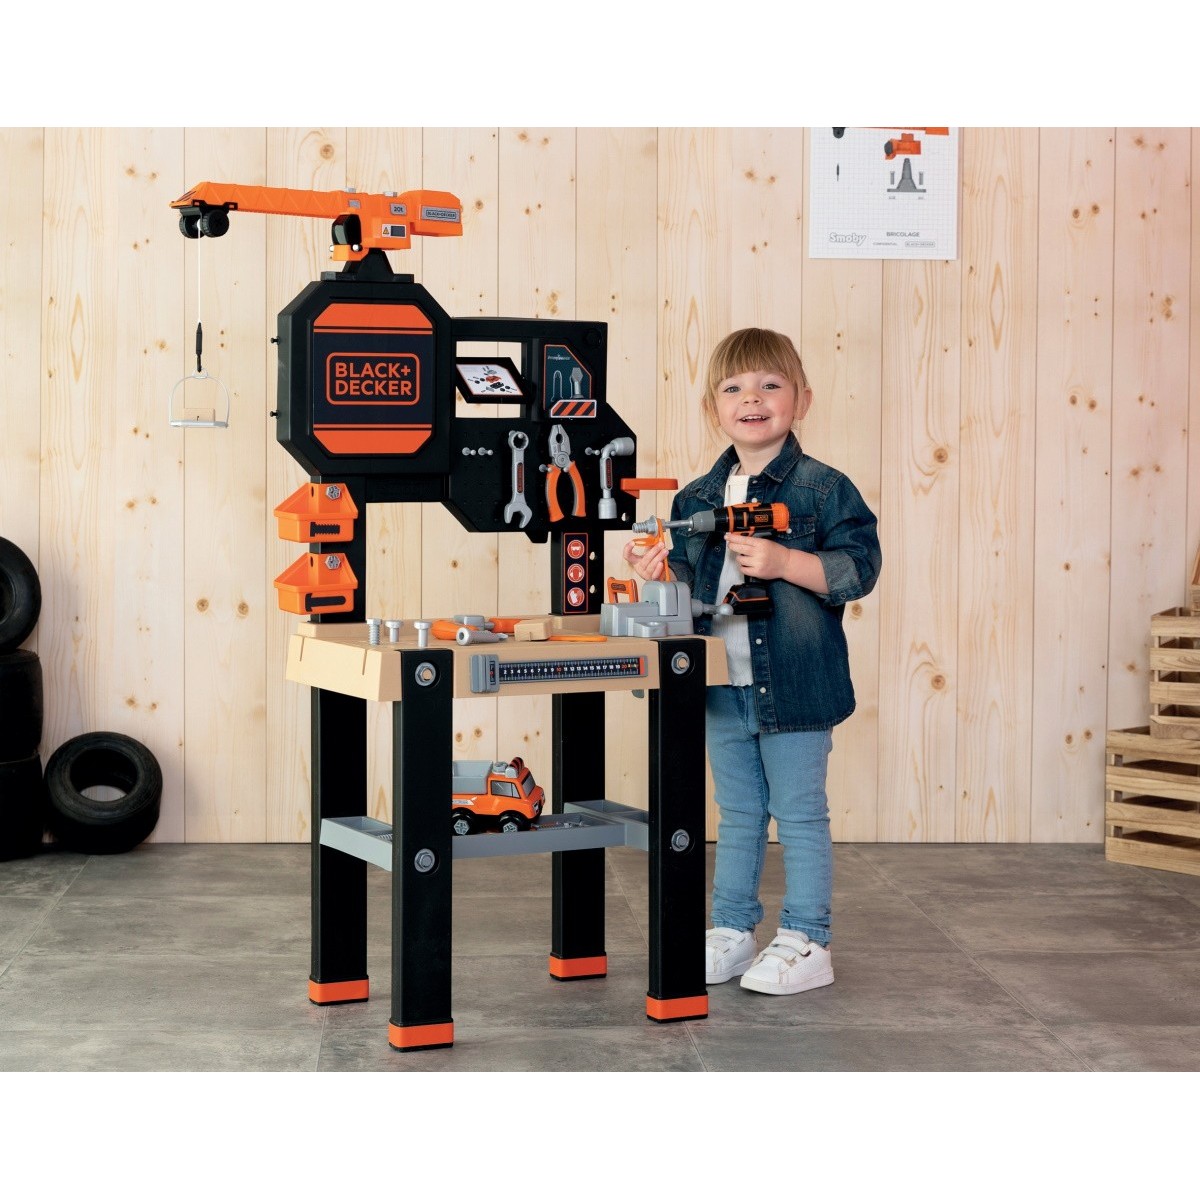 Smoby Black & Decker bricolo établi de constructeur - Outils pour enfants